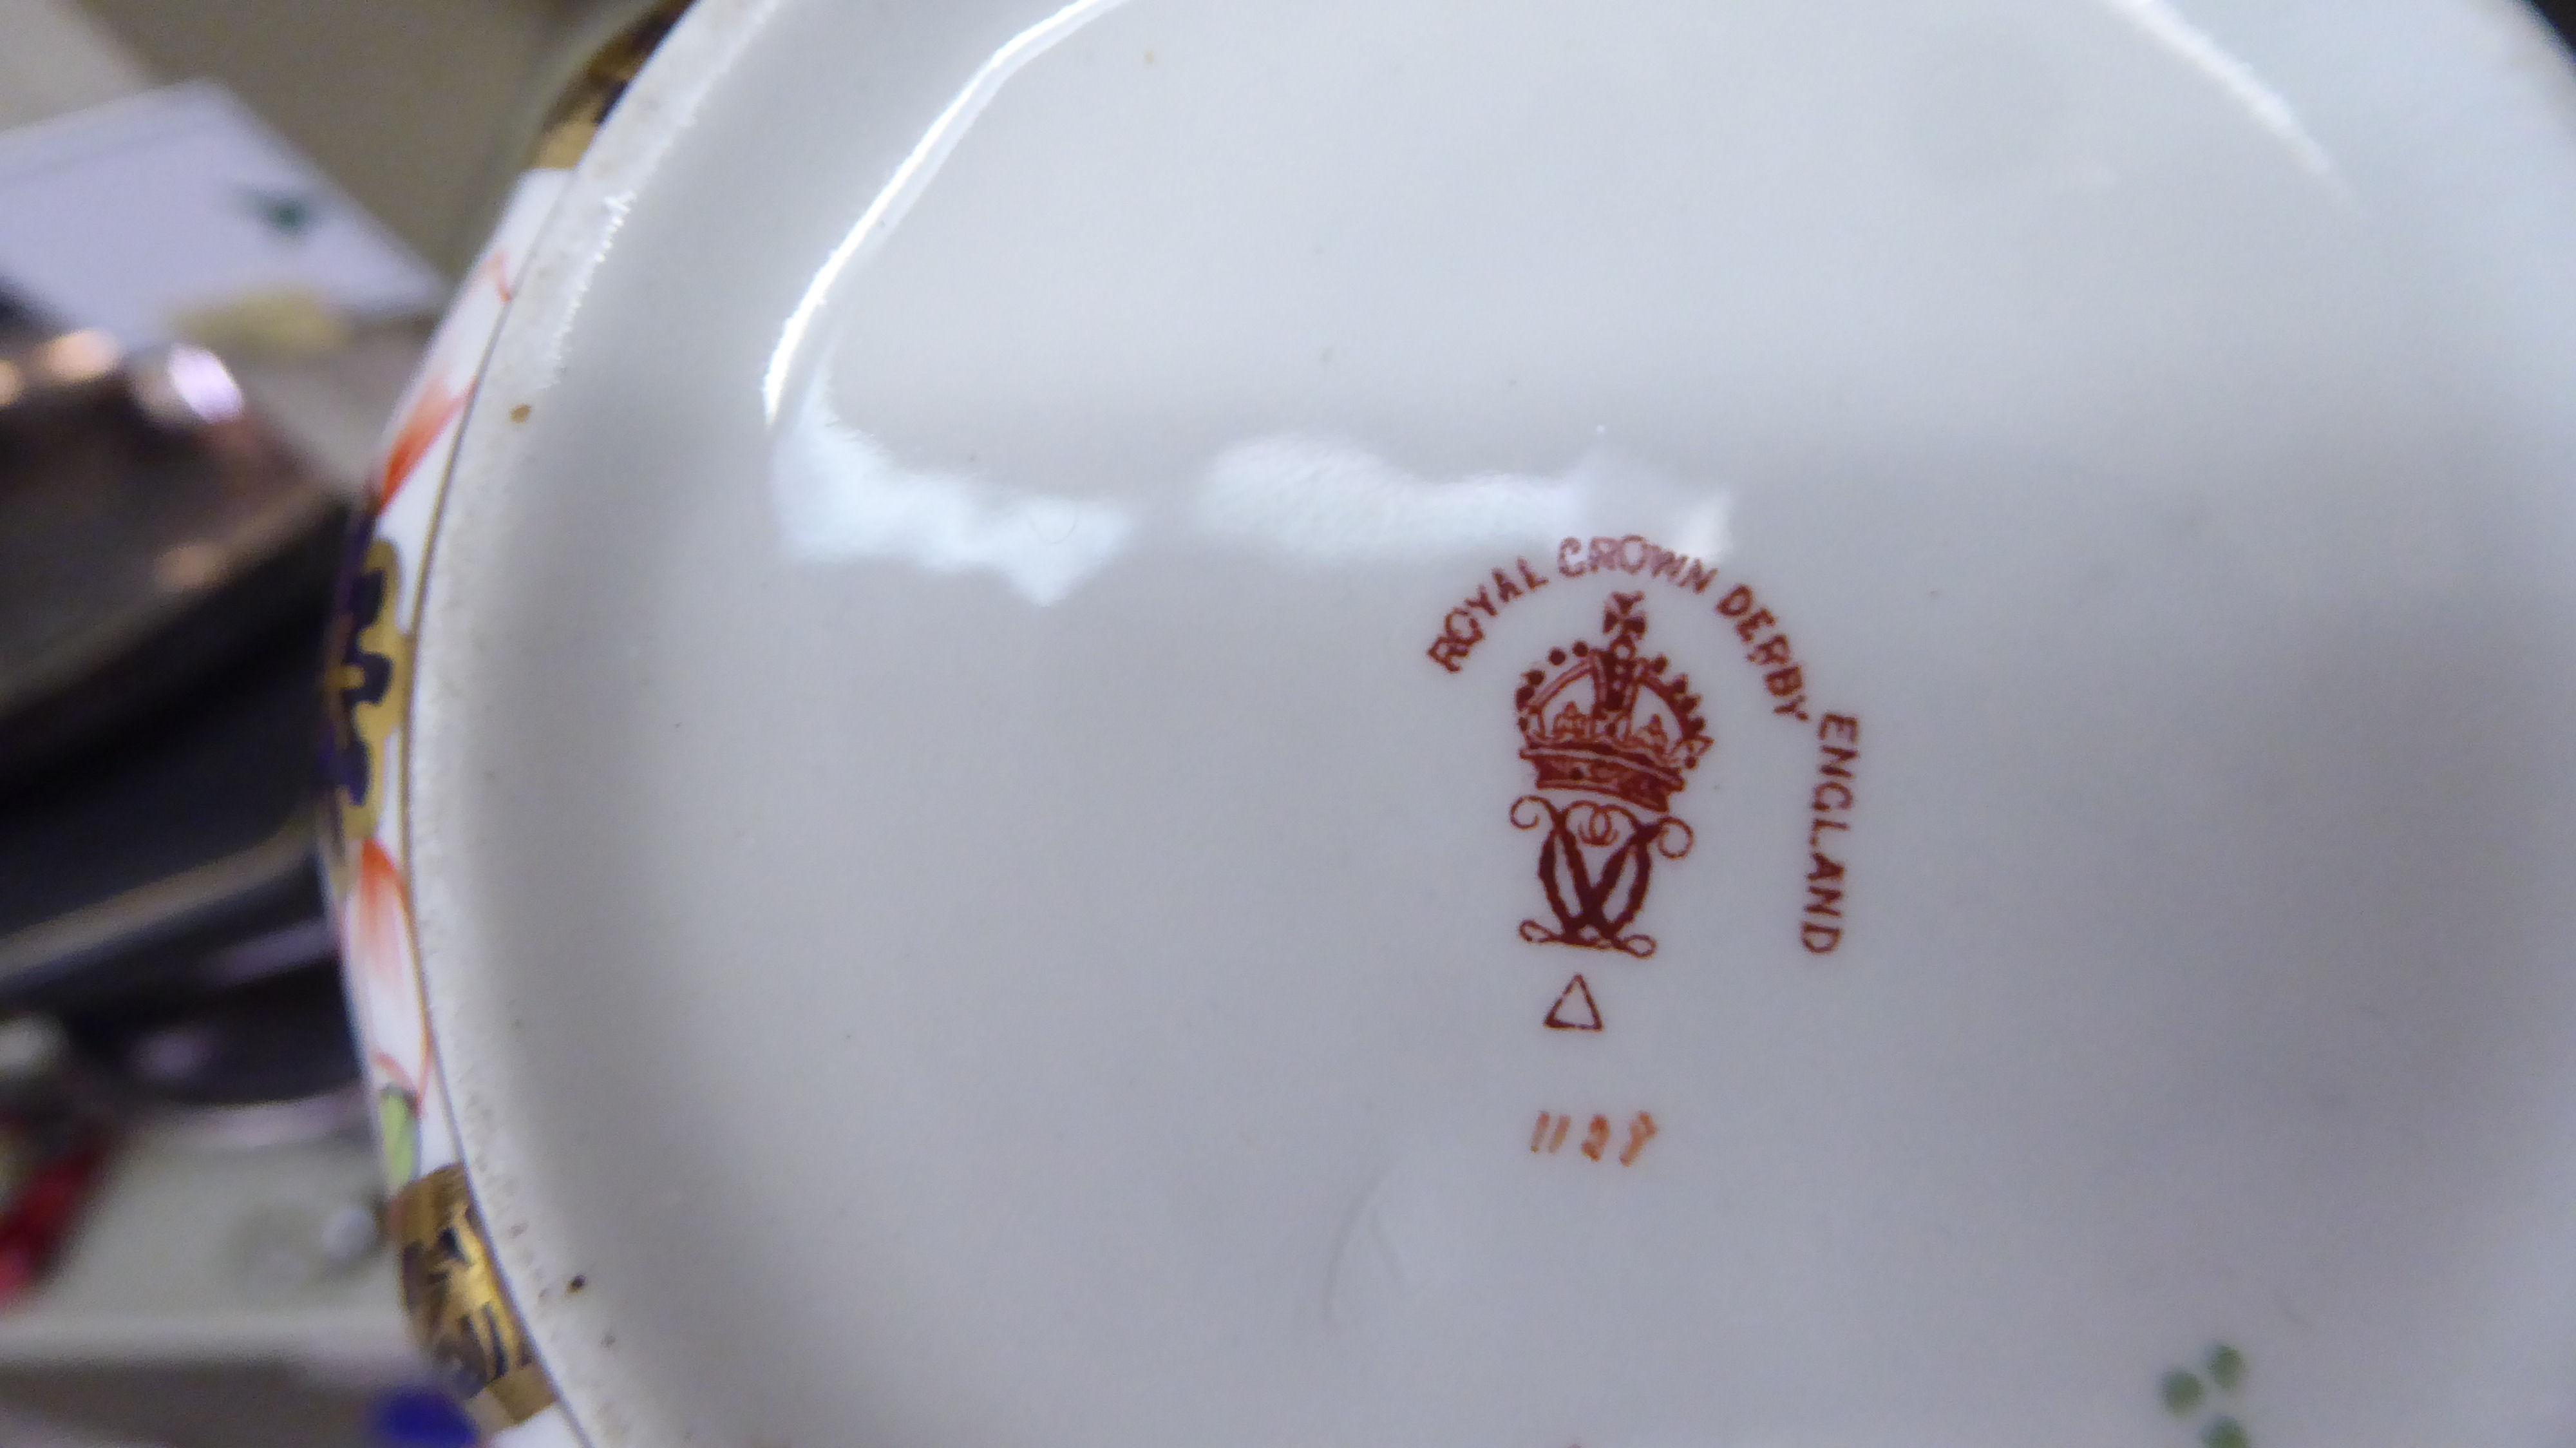 Royal Crown Derby china Imari pattern teaware - Image 7 of 7